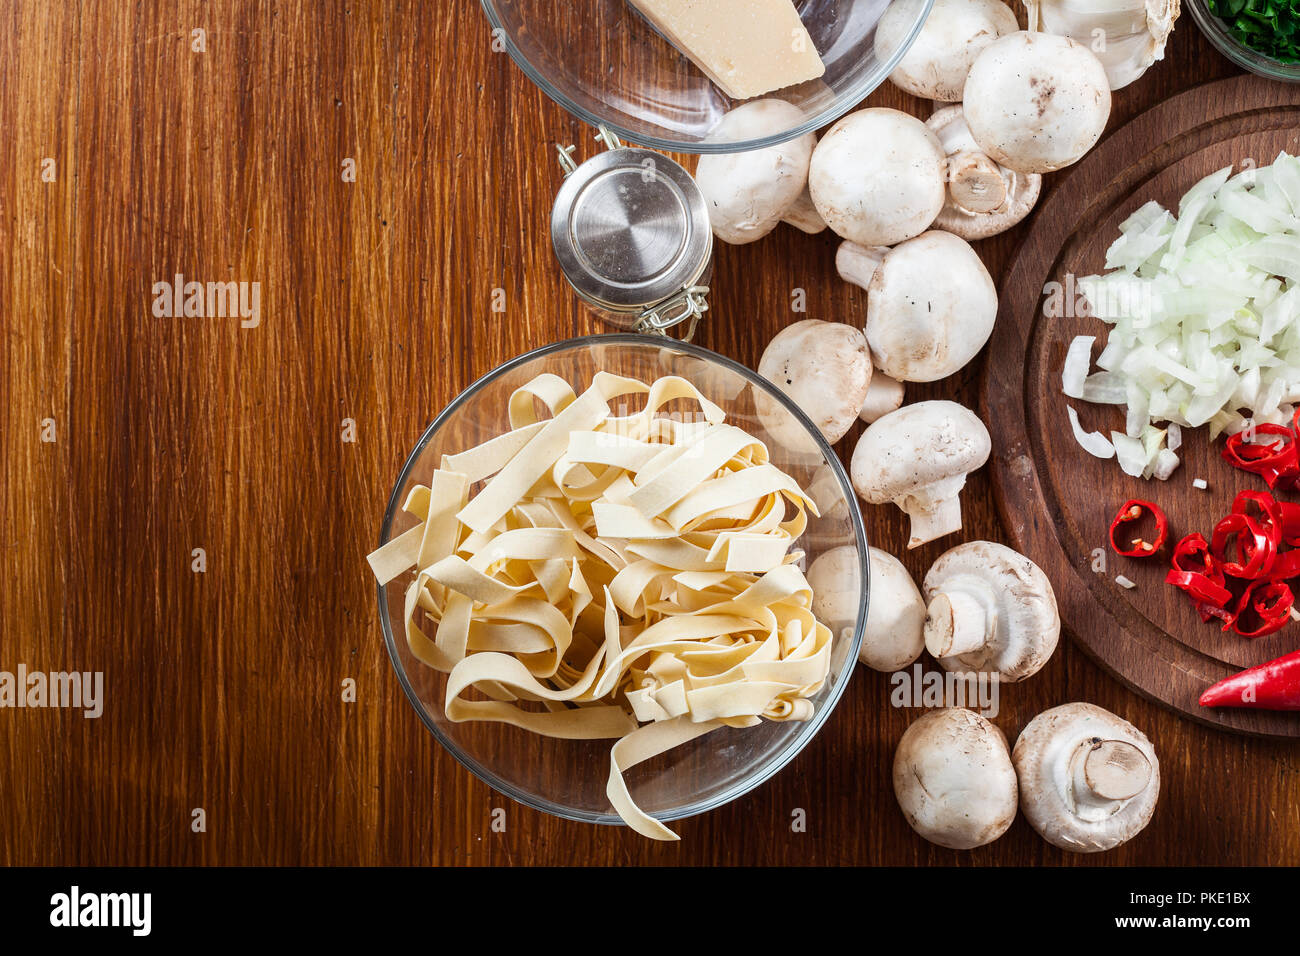 Ingredienti pronti per preparare tagliatelle con champignon in sugo di funghi. Vista superiore Foto Stock